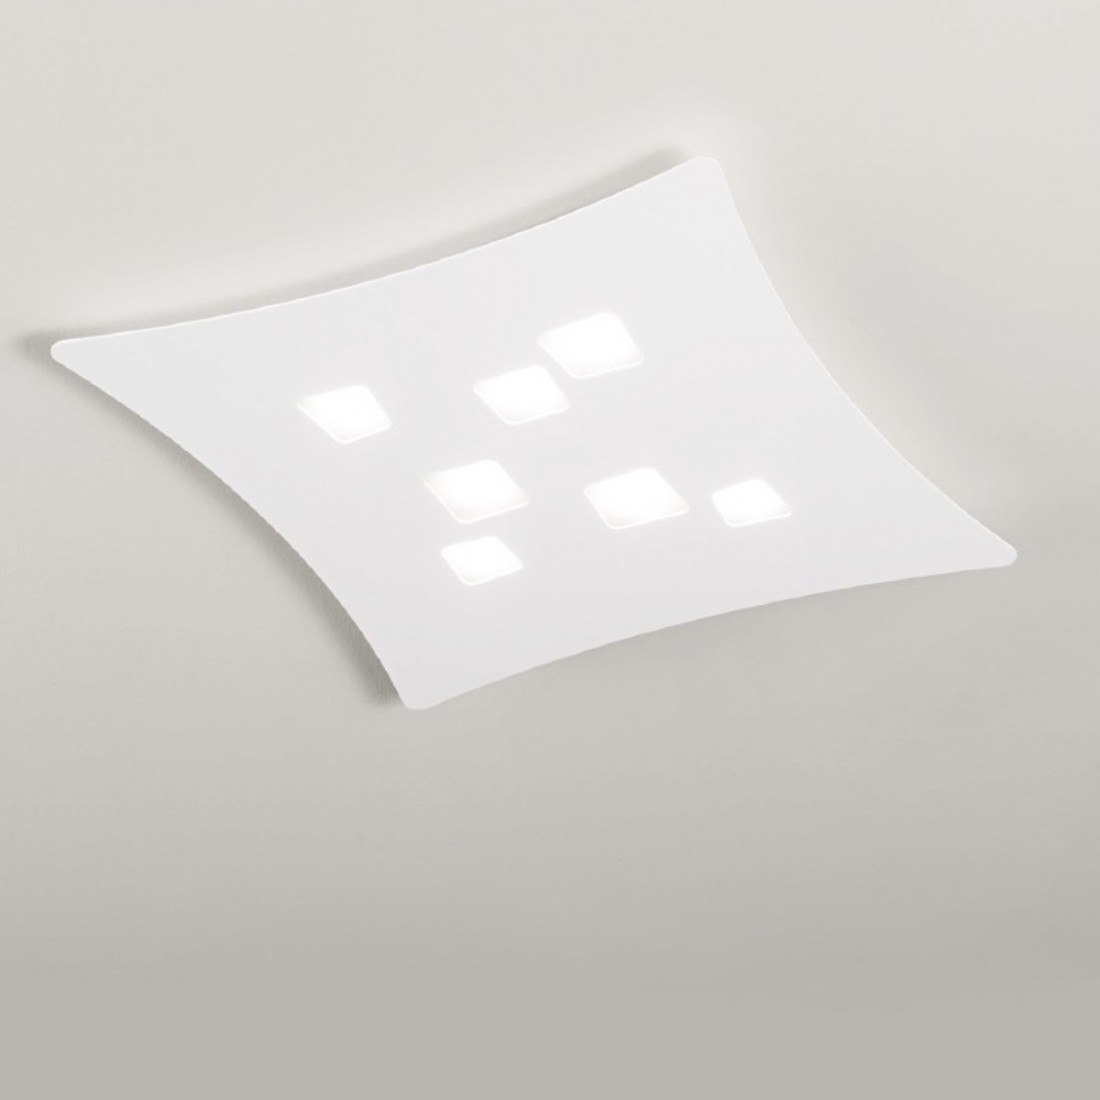 GE-ISOTTA PG GX53 LED 69x62 plafonnier aluminium blanc mat gris tourterelle plafonnier intérieur moderne